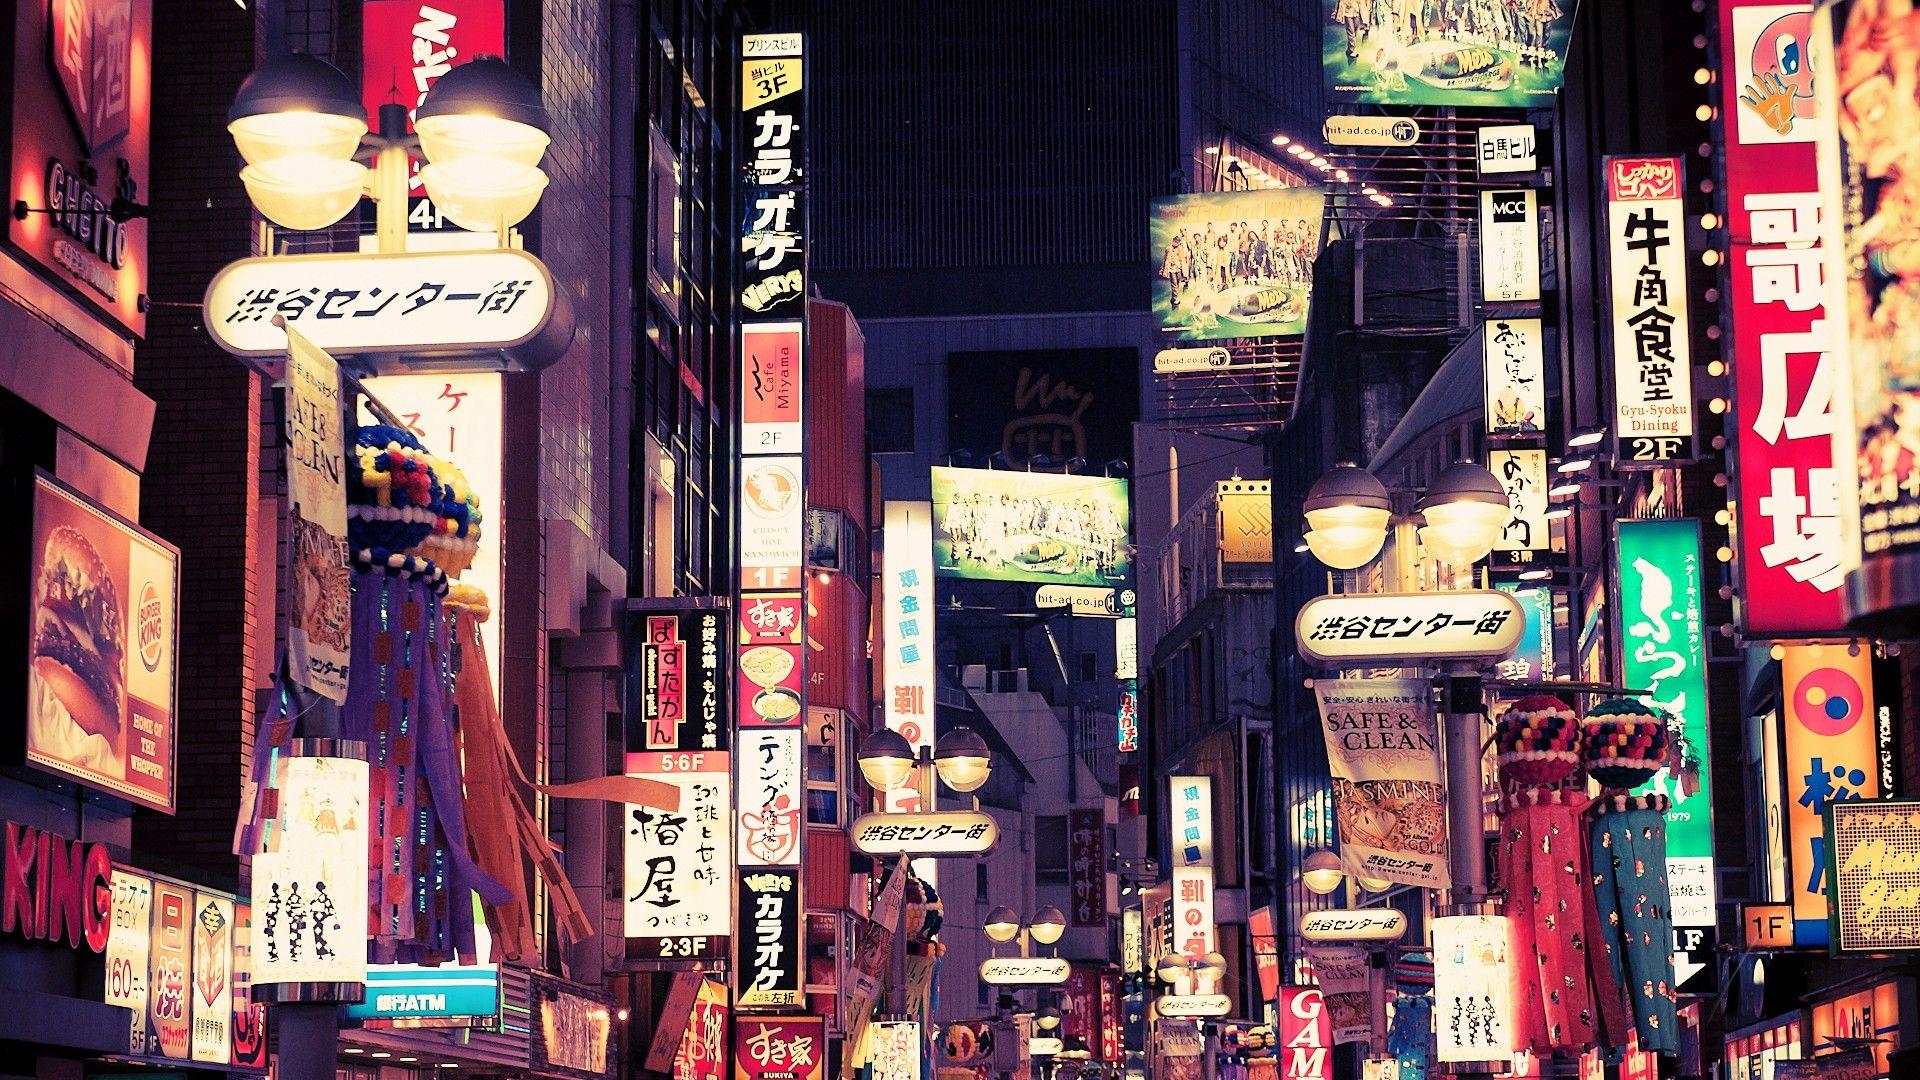 Với những người yêu nghệ thuật thành phố, Tokyo City Art - Wallpapers sẽ là lựa chọn hoàn hảo để cập nhật những hình nền tuyệt đẹp cho thiết bị của bạn. Hãy tìm hiểu thêm về những bức tranh nghệ thuật đẹp mắt này và tạo cảm hứng sáng tạo từ chính thành phố Tokyo. (For those who love city art, Tokyo City Art - Wallpapers is perfect choice to update stunning wallpapers for your devices. Let\'s explore these beautiful artwork and get creative inspiration from Tokyo City.)